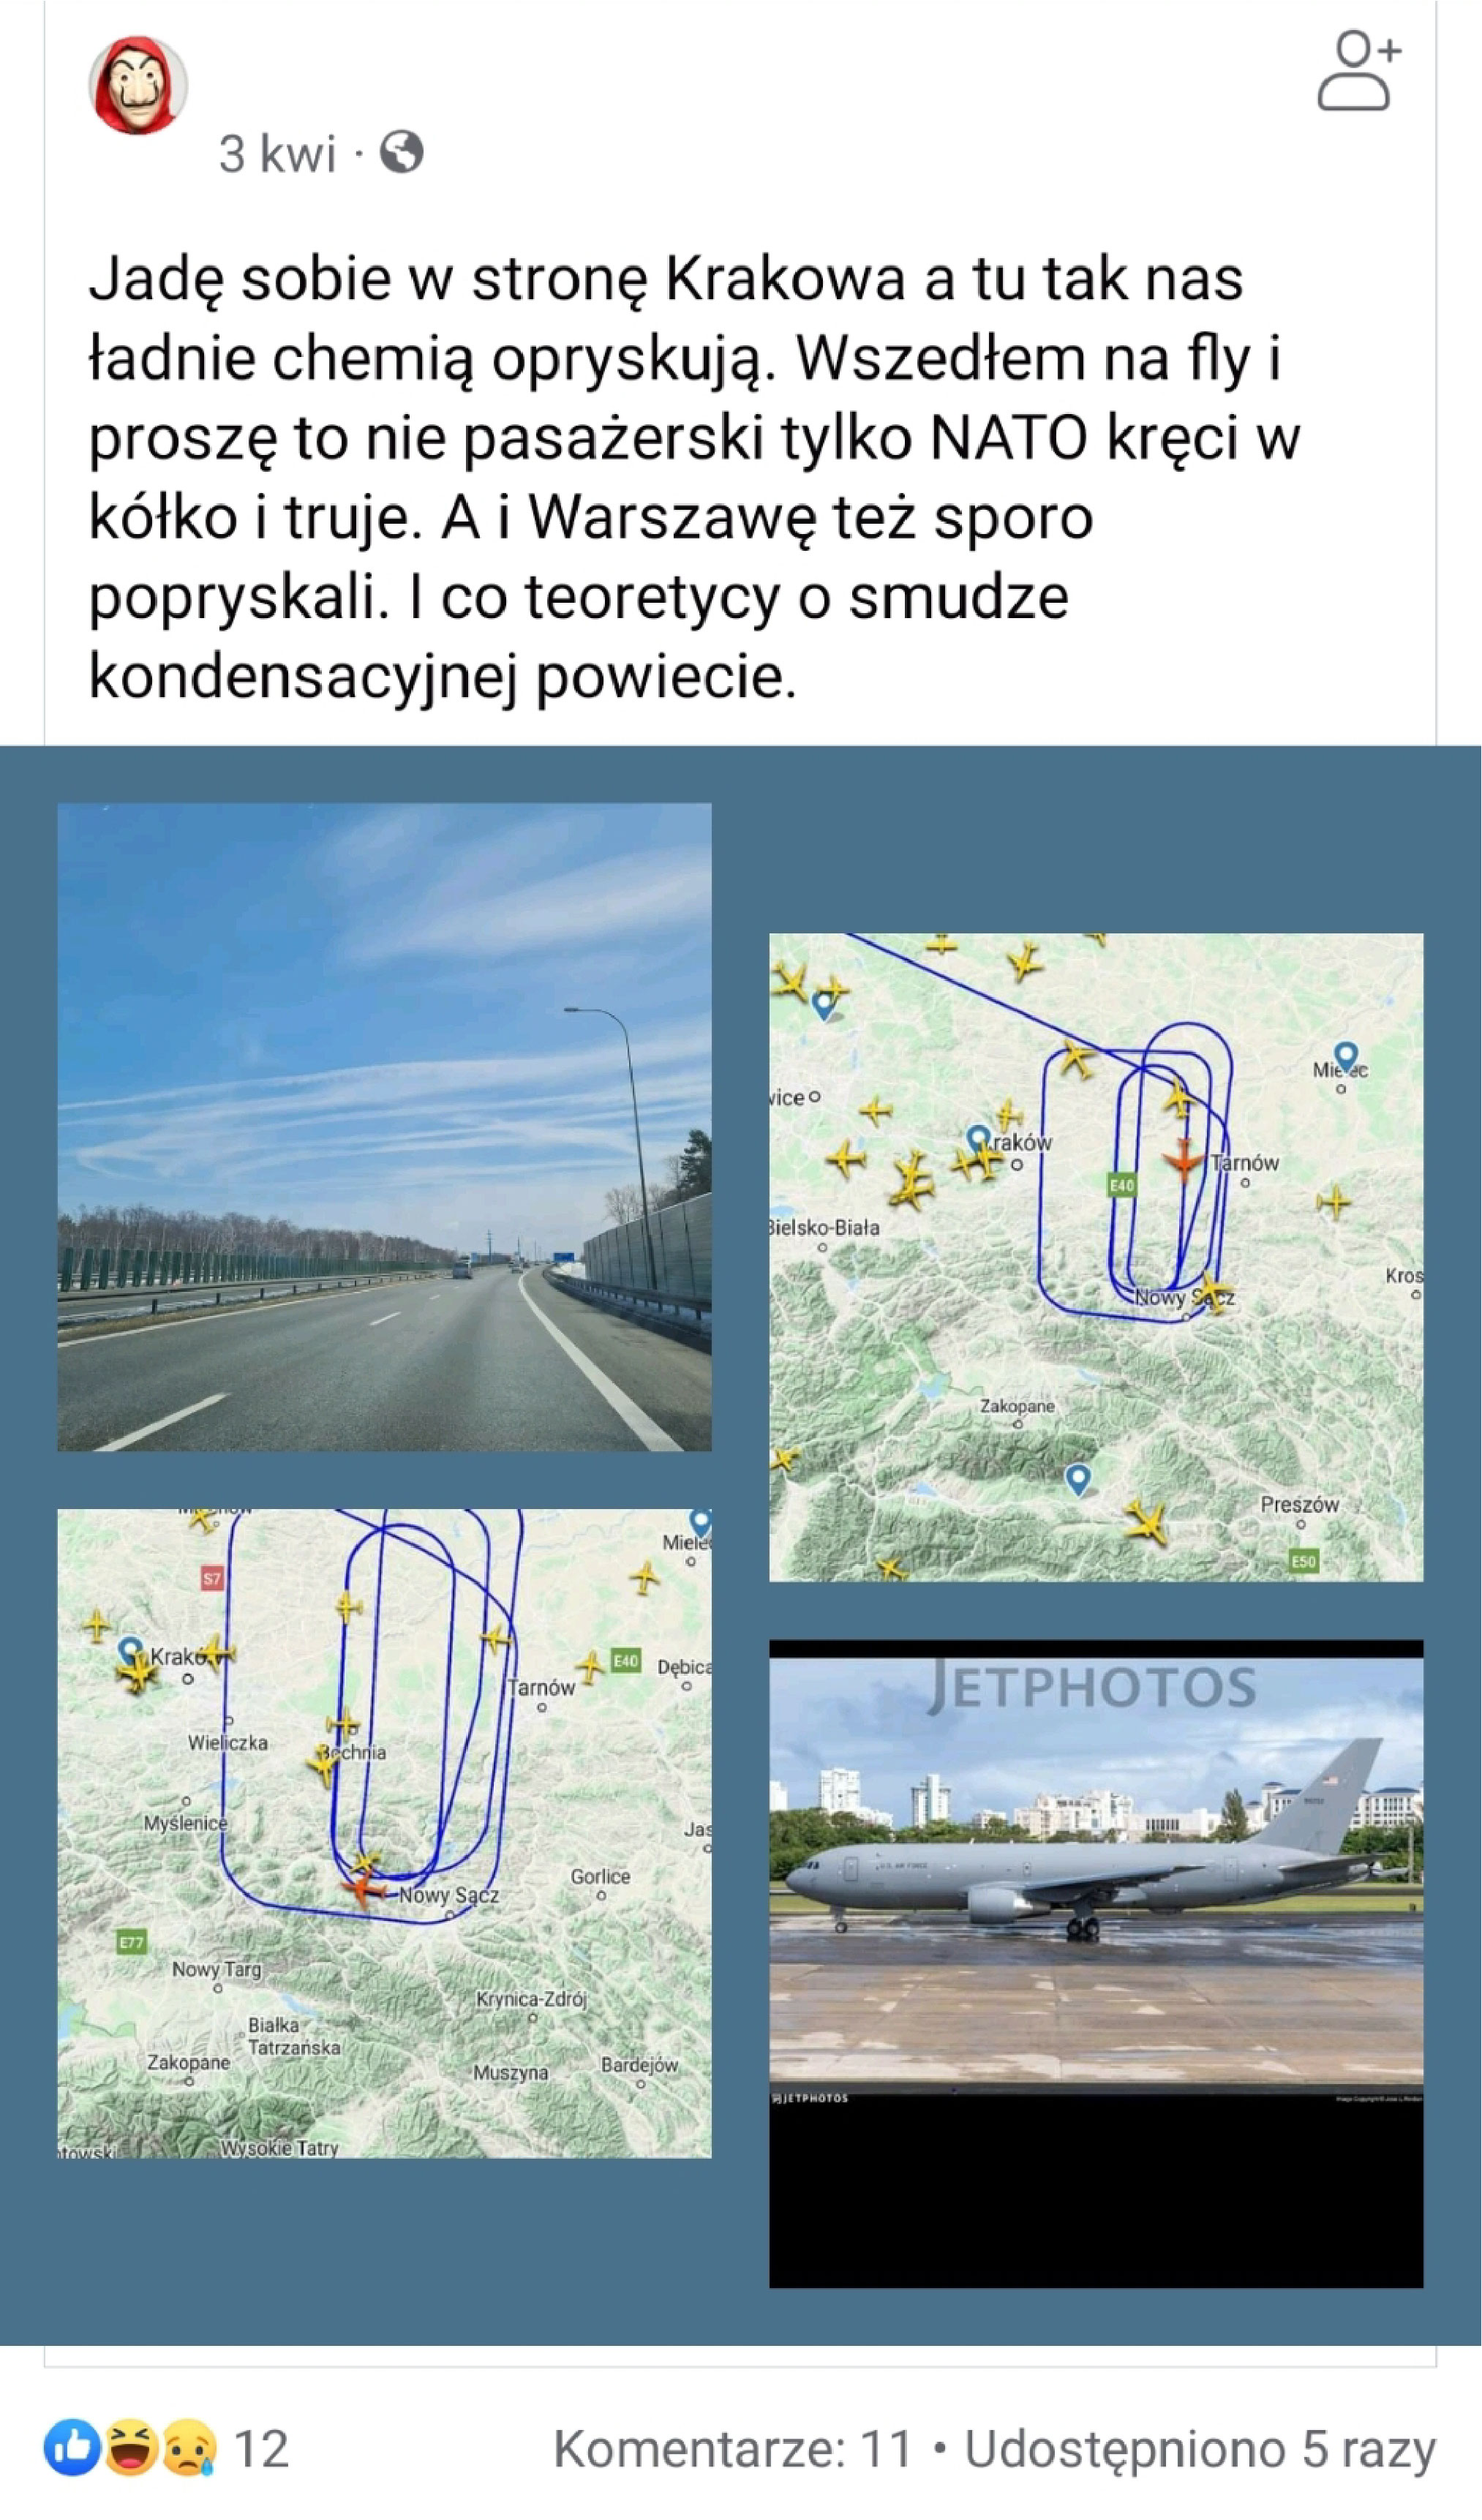 Zrzut ekranu jednego z użytkowników serwisu Facebook oraz zdjęcia nieba ze smugami i samolotu, które mają potwierdzić jego tezę, że nad Polską rozpylane są tzw. chemtrails.